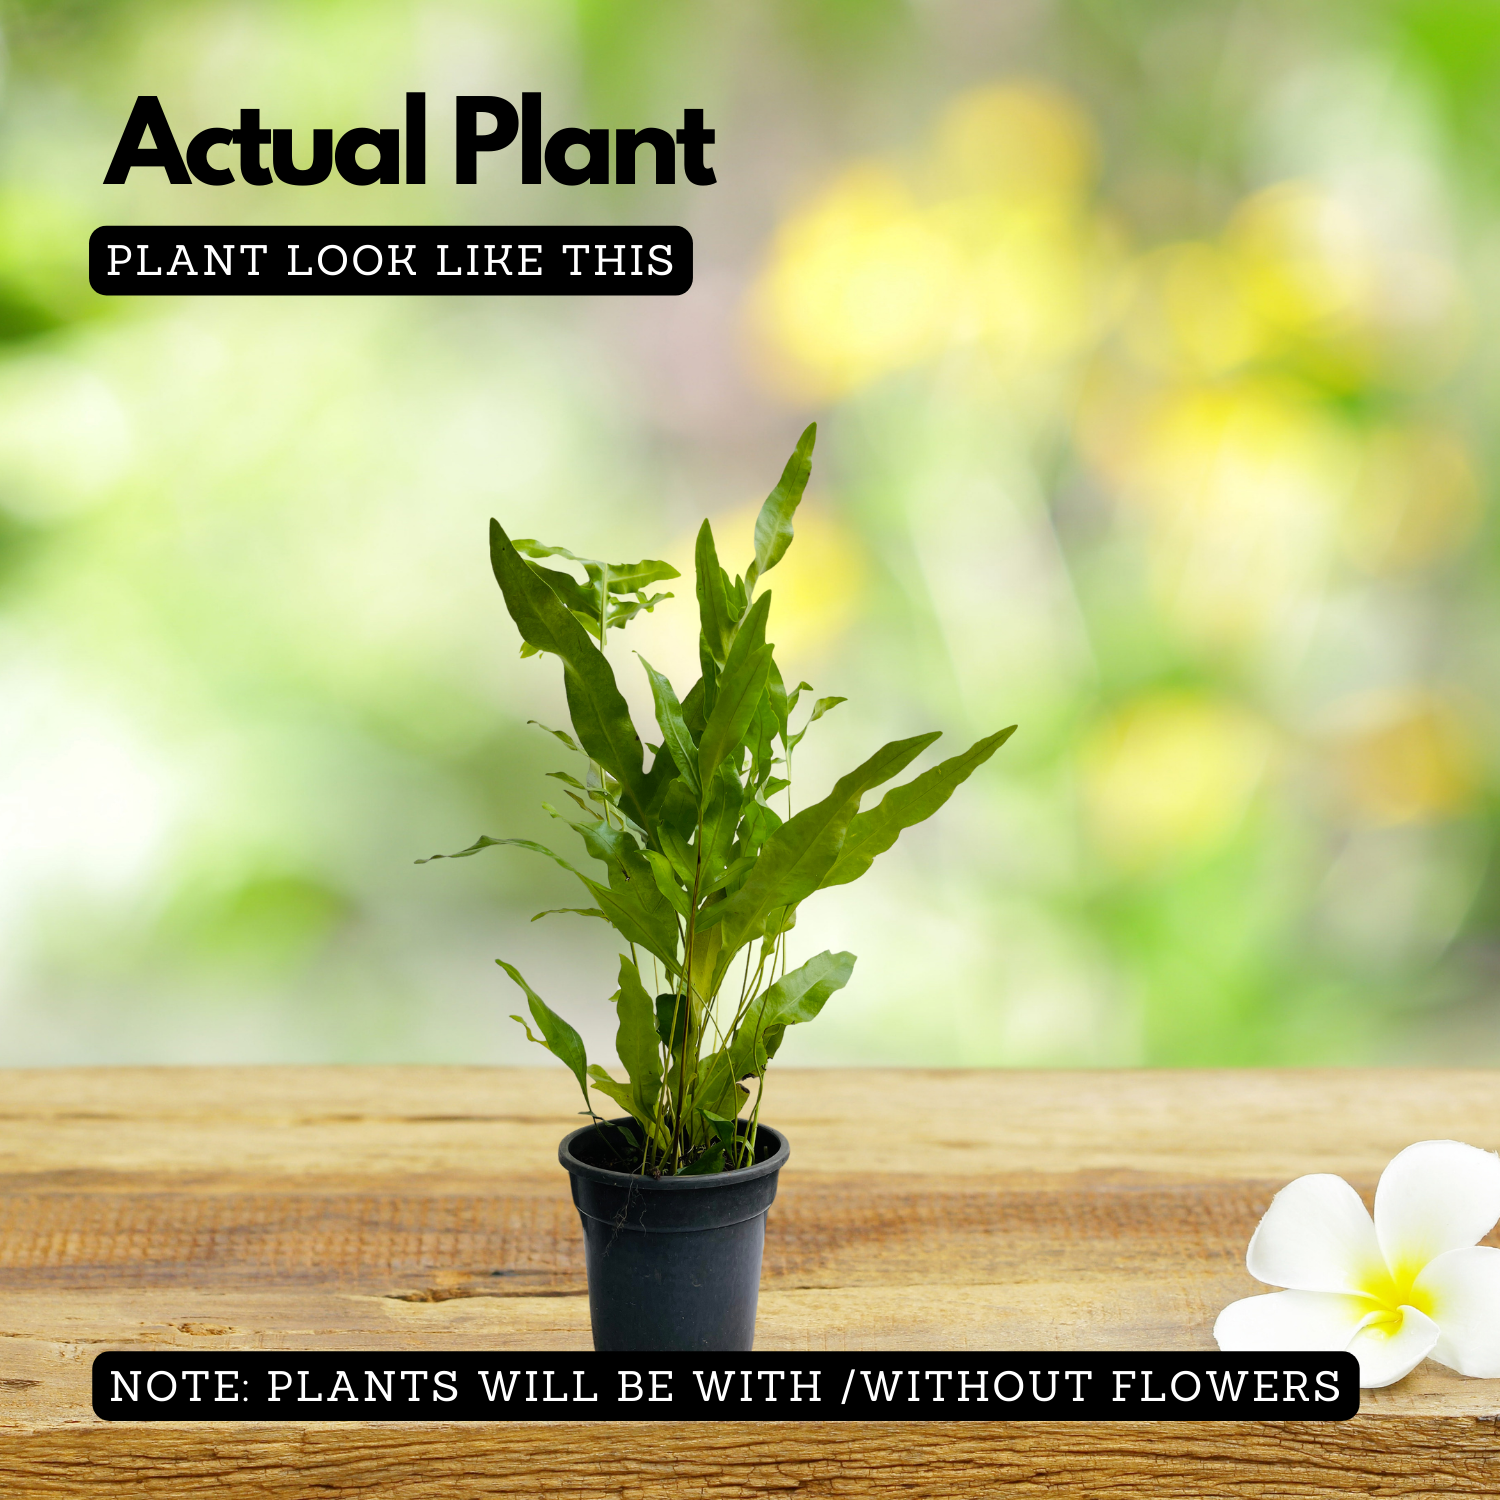 Blue Star Fern (Phlebodium aureum) - Live Plant in pot (Home & Garden)